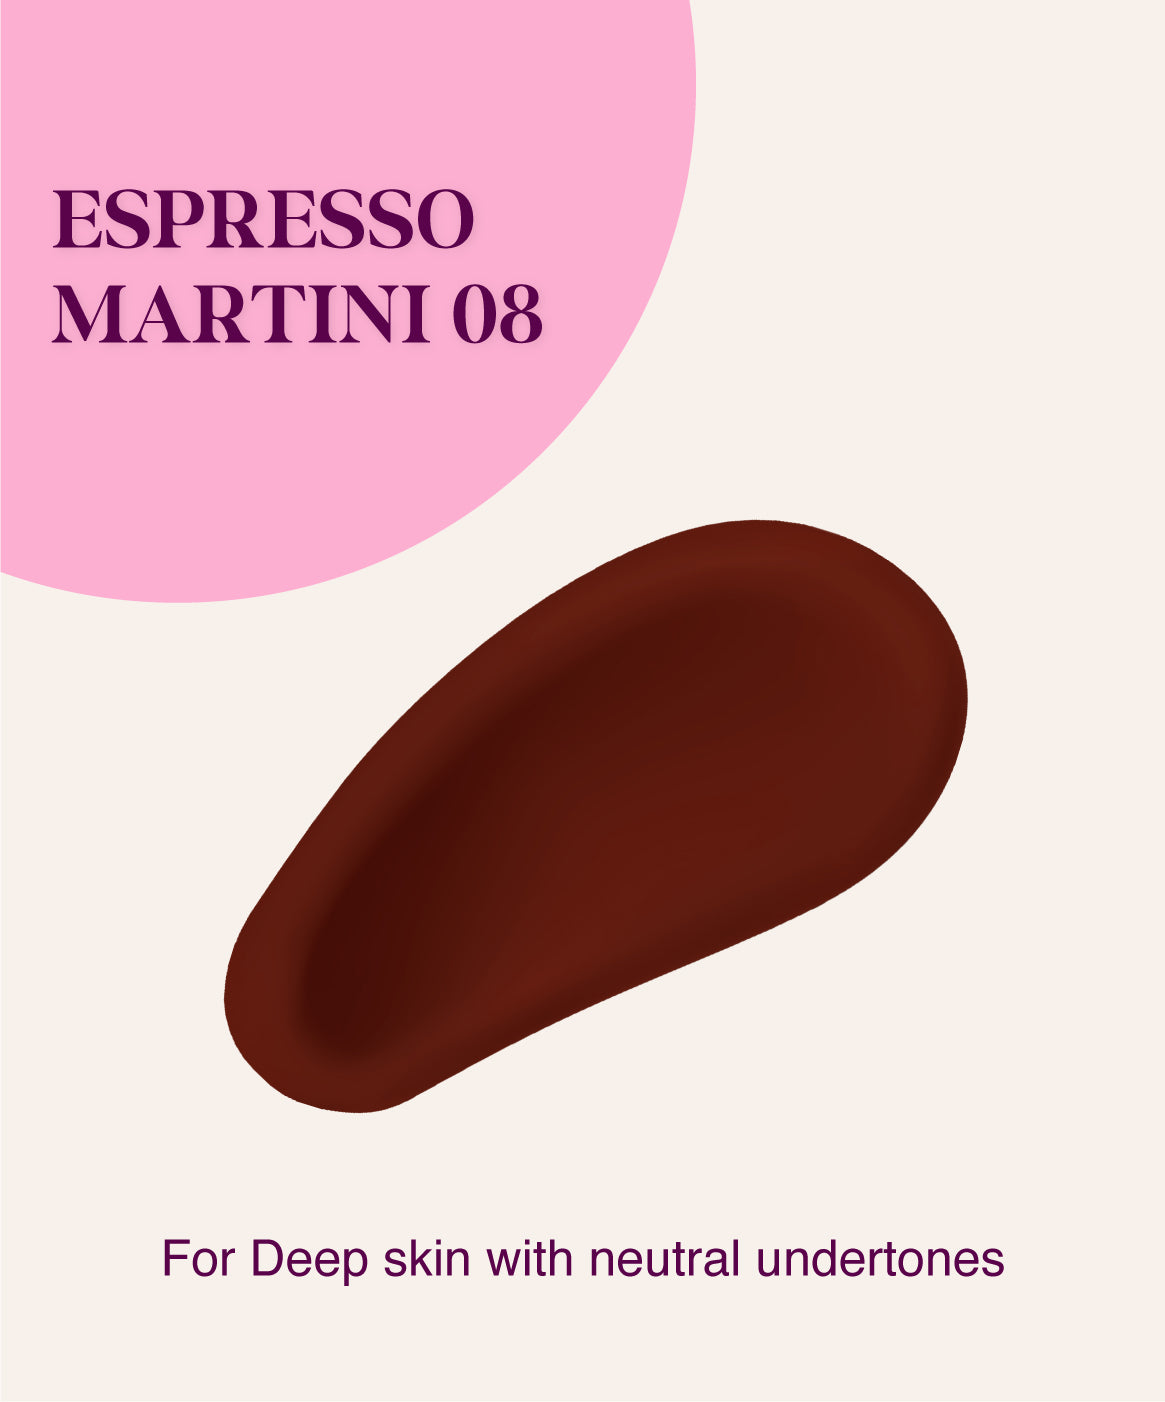 Espresso Martini 08